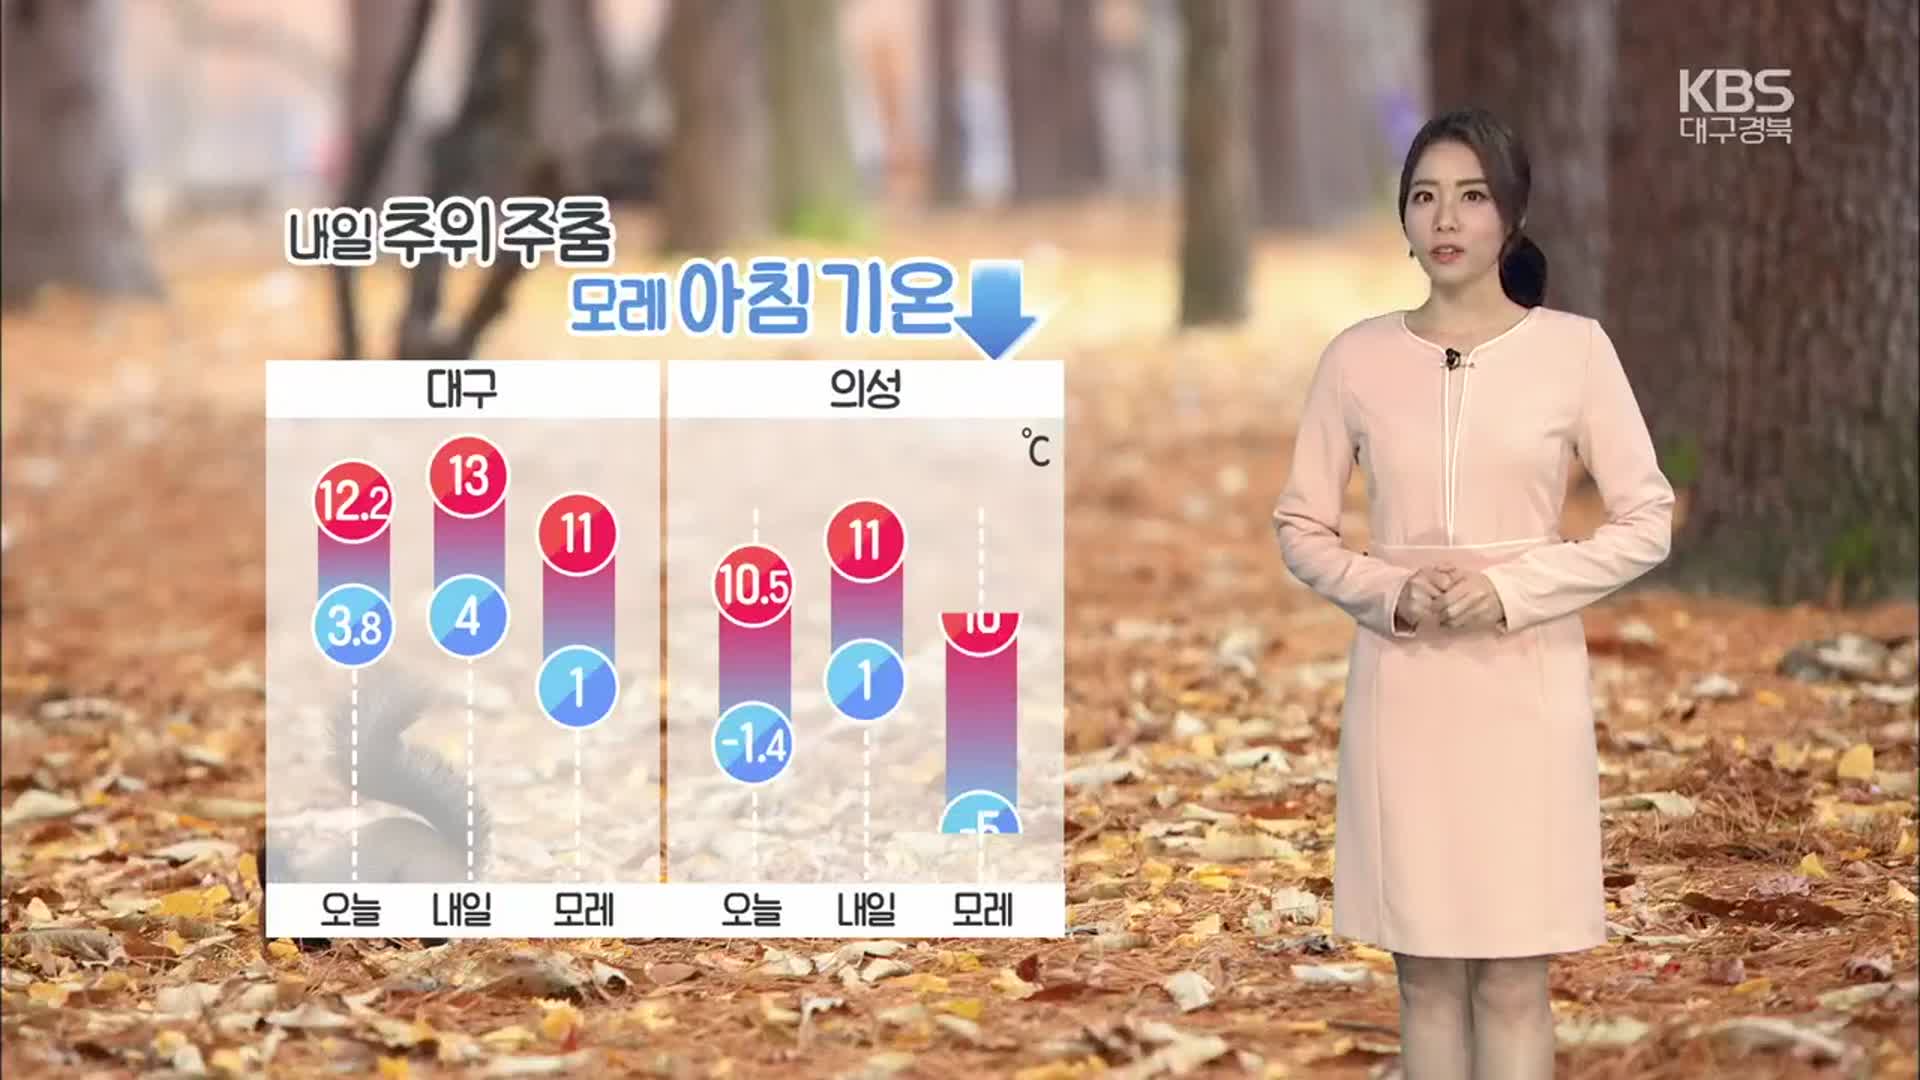 [날씨] 대구·경북 내일 추위 주춤 ‘한낮 최고 13도’ …곳곳 비소식